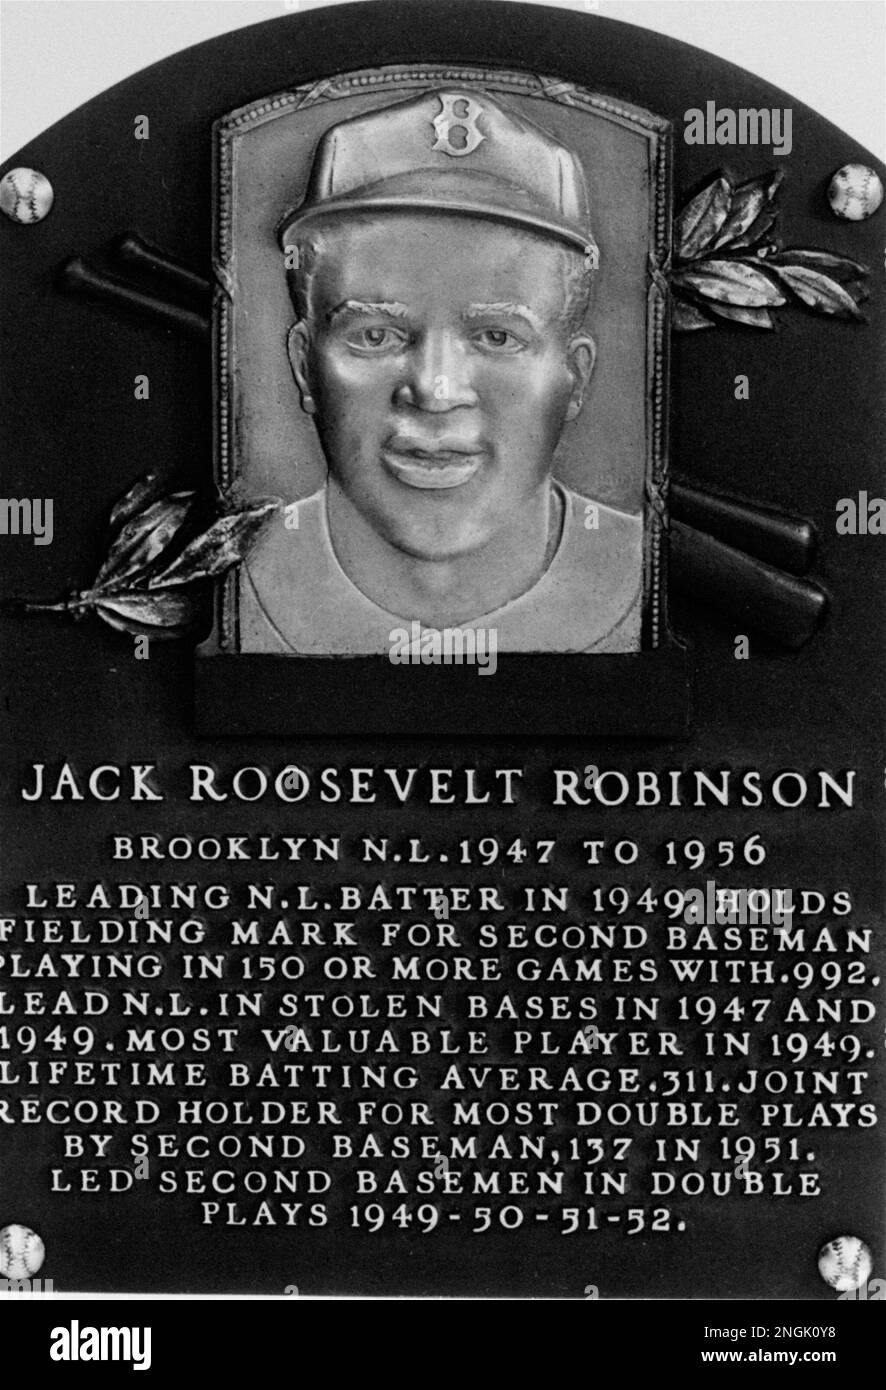 jackie robinson hall of fame